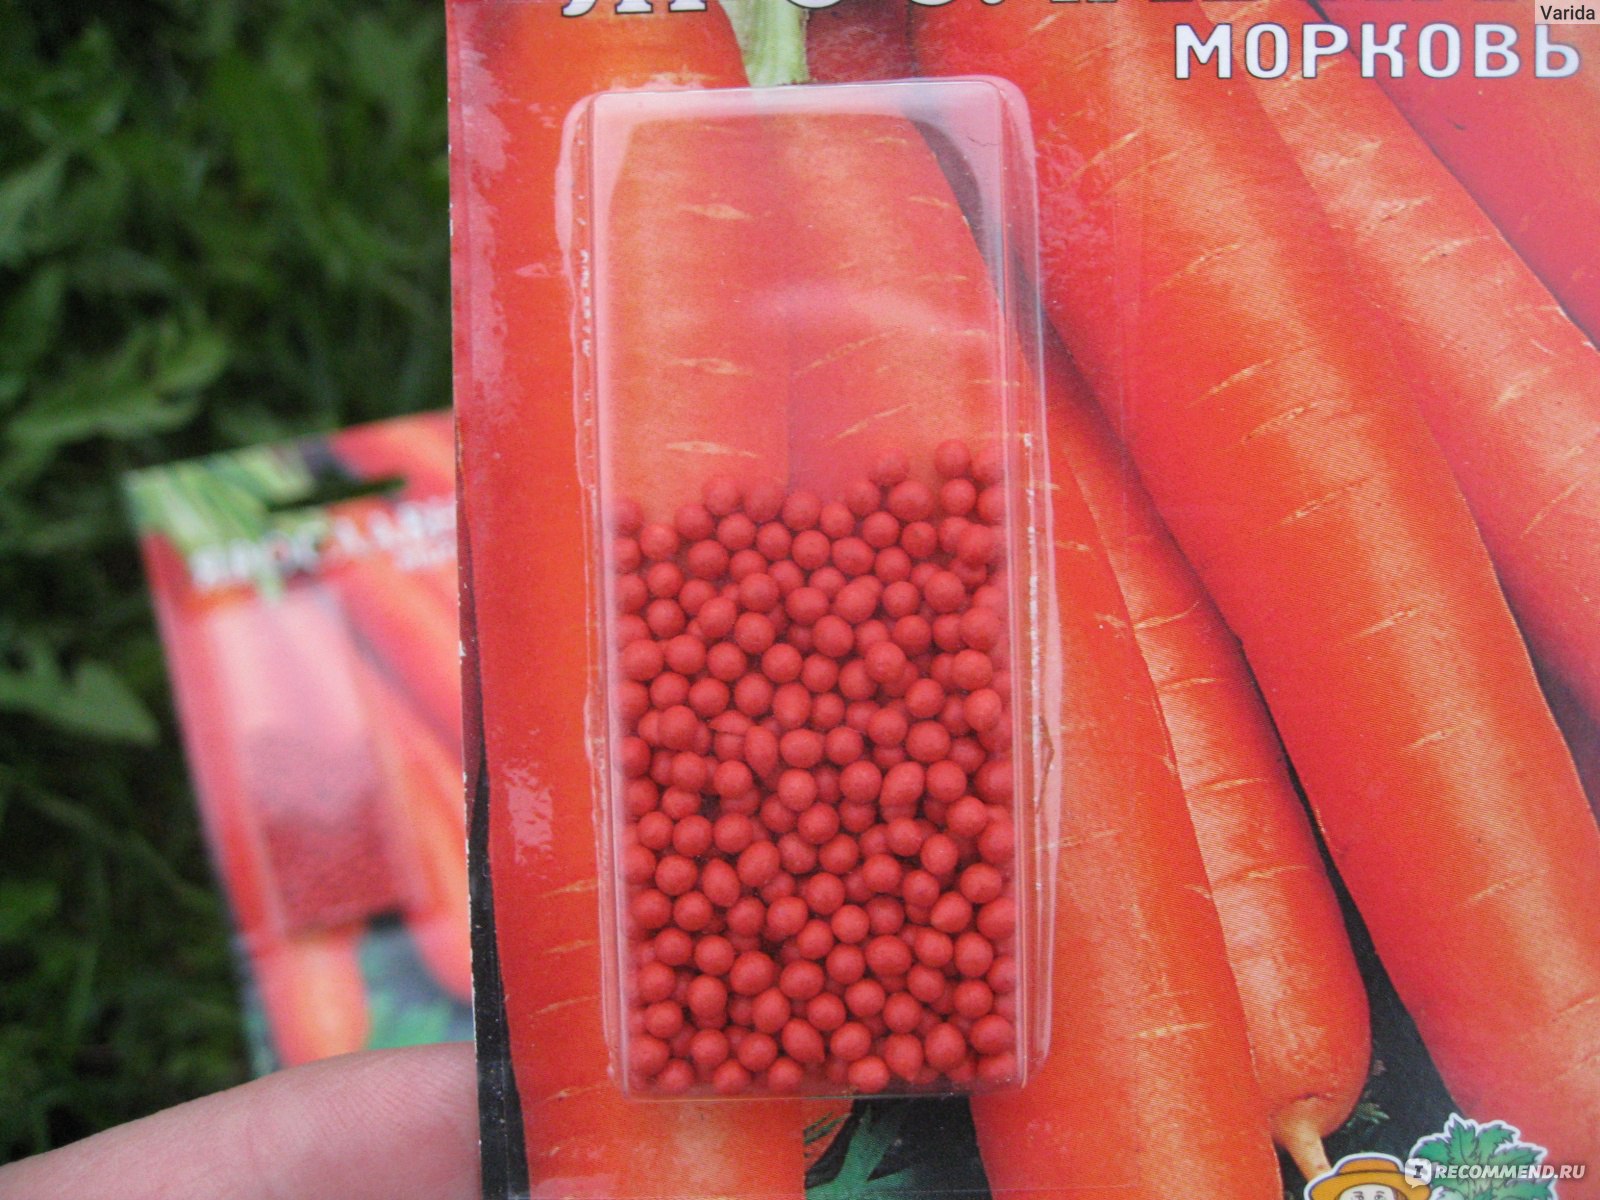 Морковь Ярославна: описание и характеристики сорта, правила посадки и выращивания, отзывы